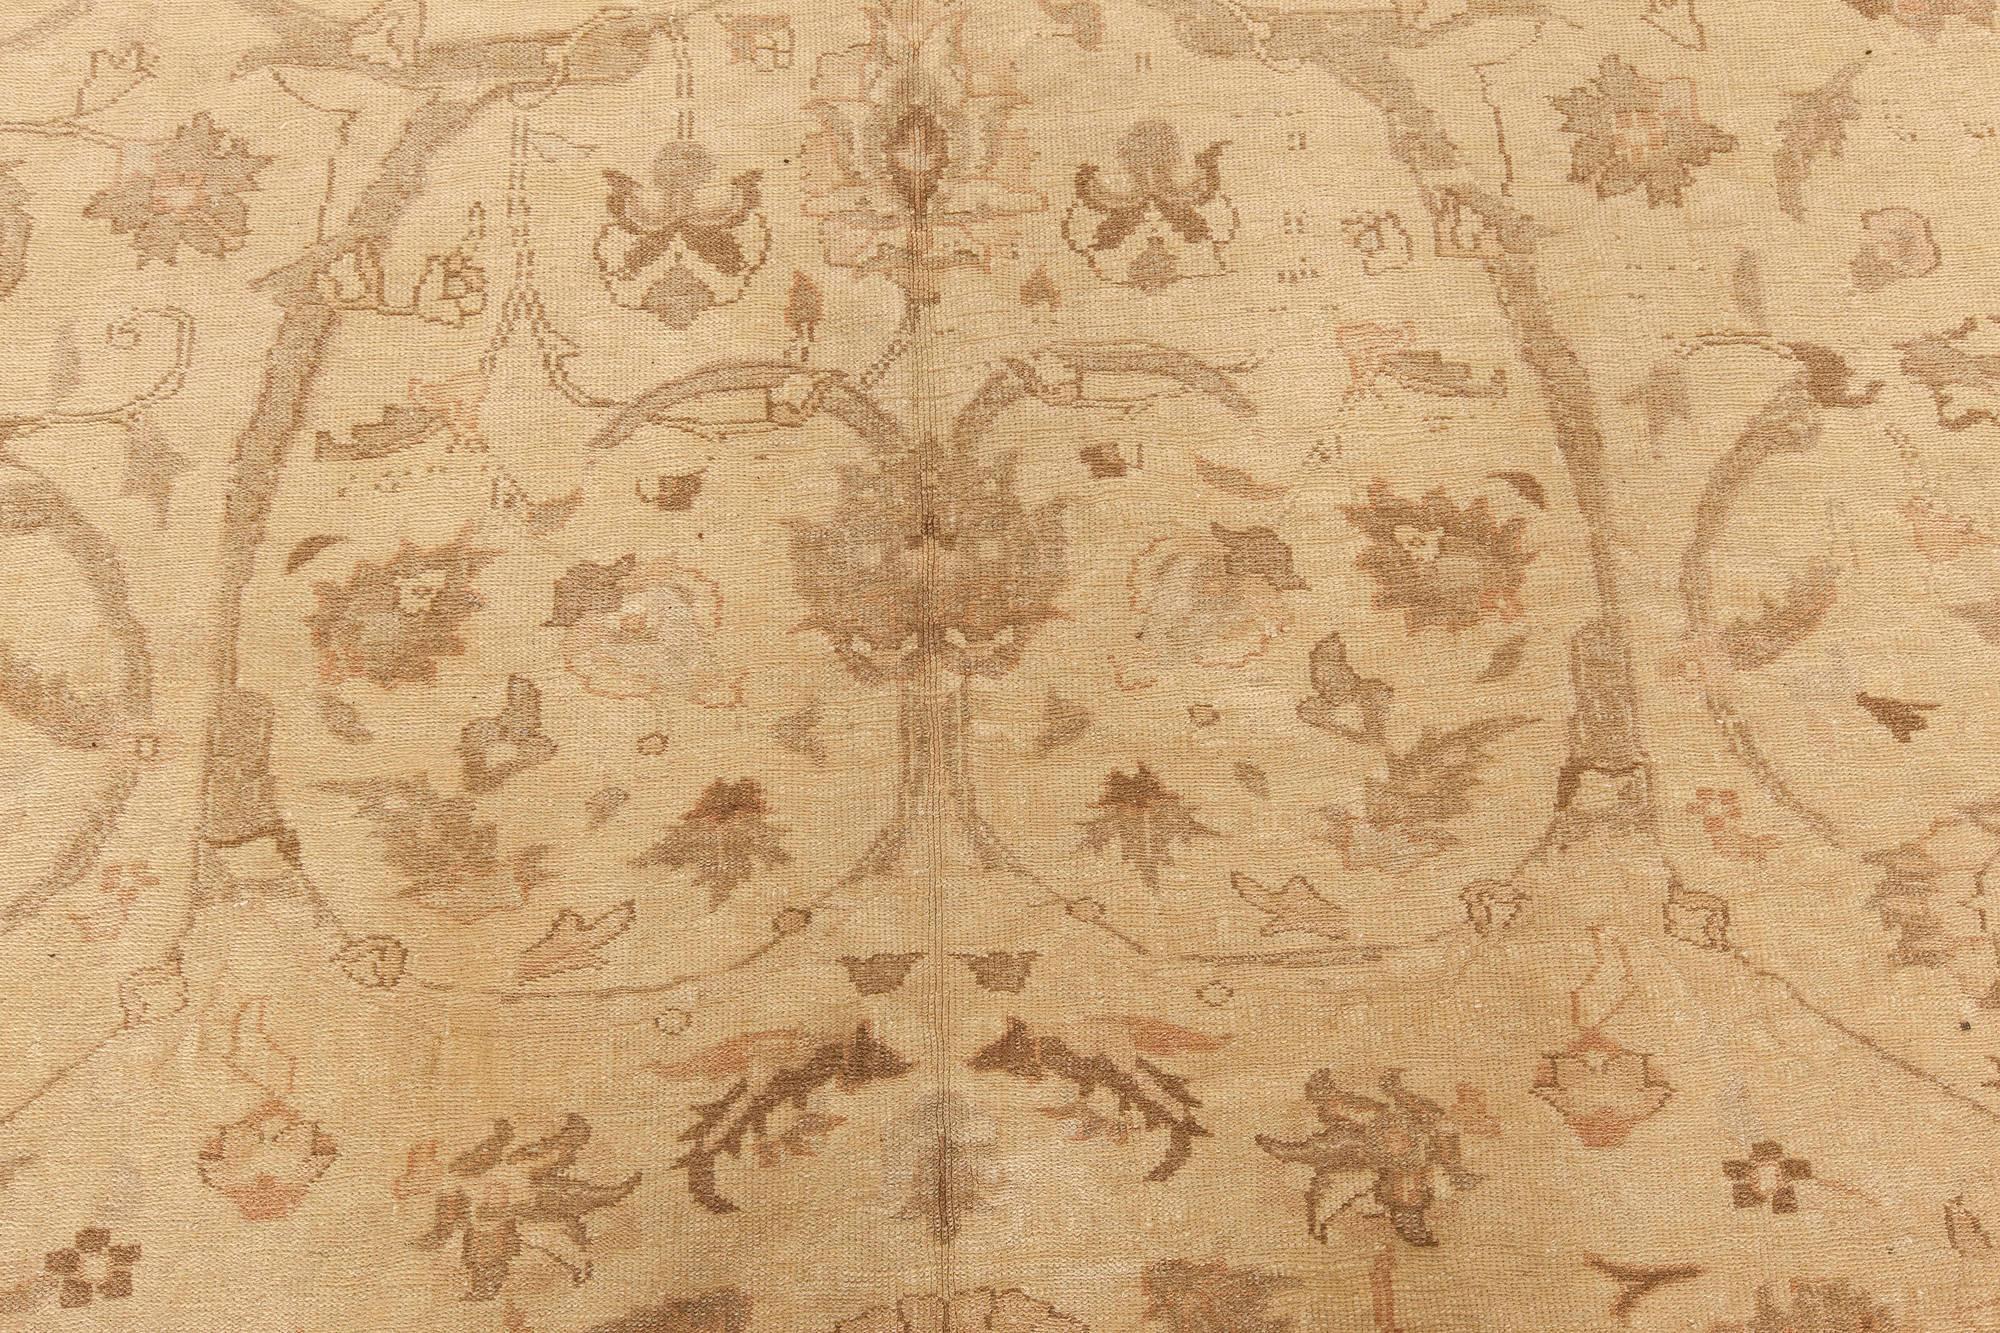 Moderner traditioneller orientalisch inspirierter handgefertigter Teppich von Doris Leslie Blau.
Größe: 9'0